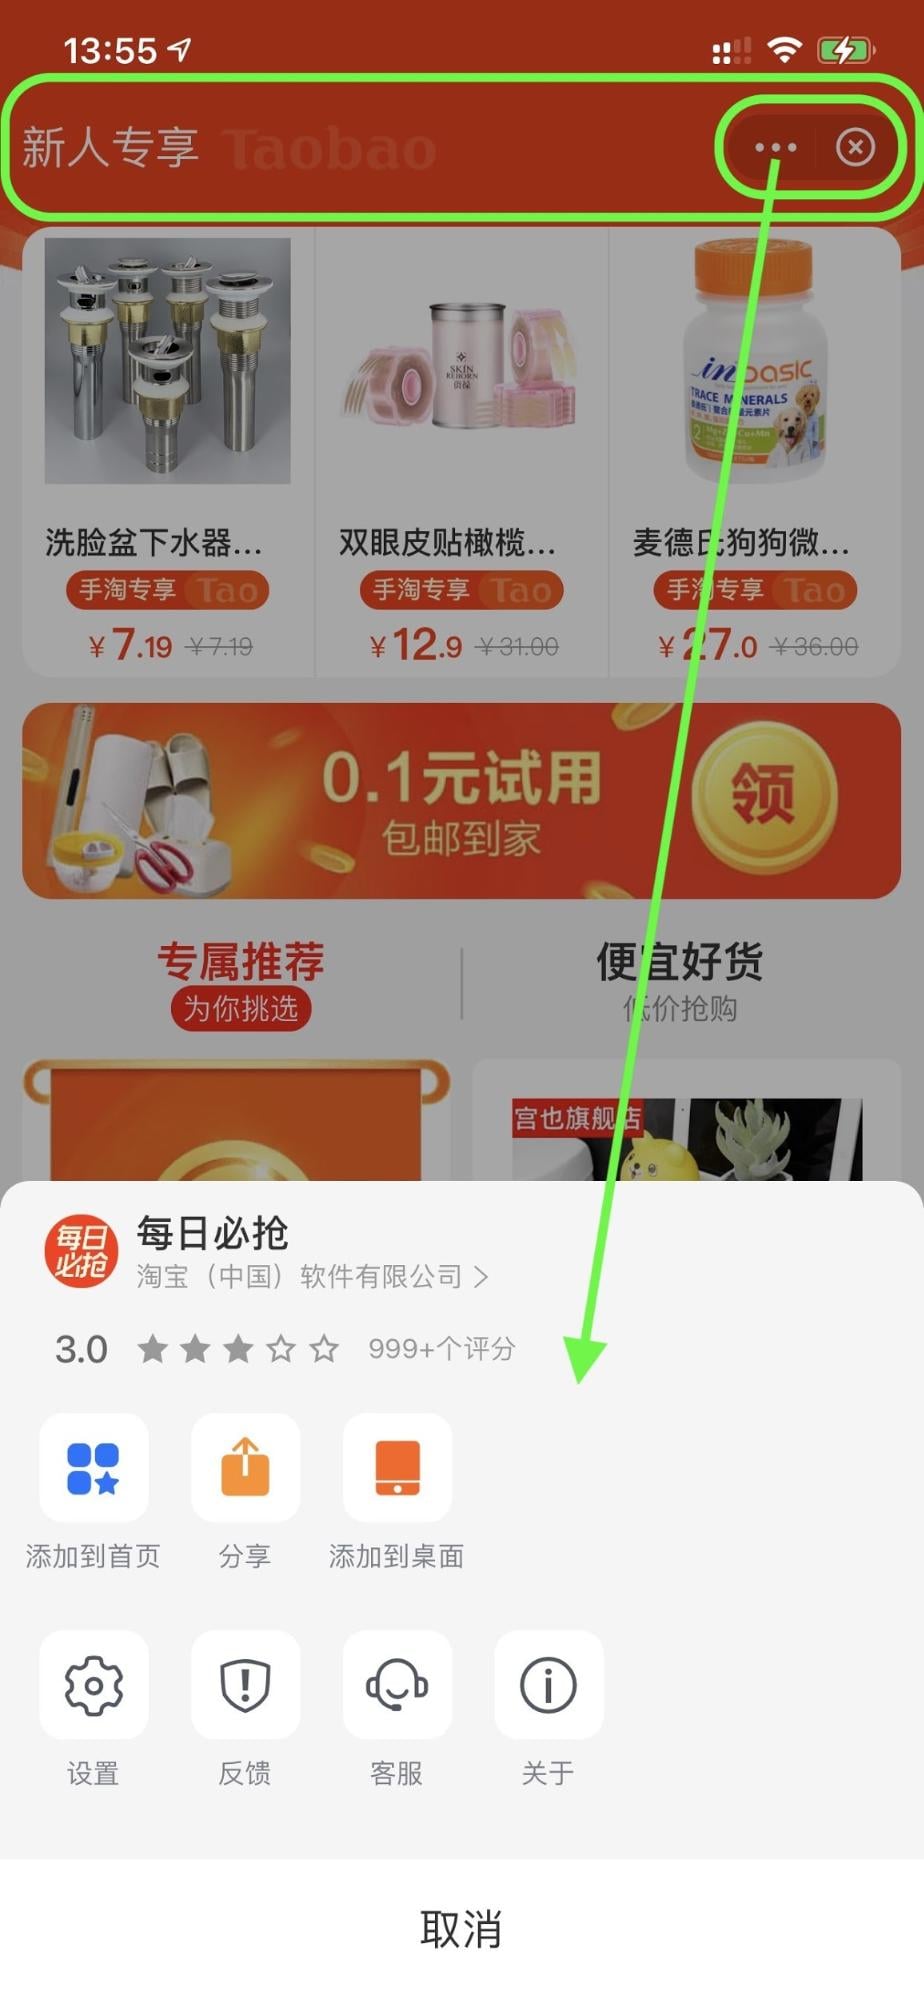 Alipay सुपर ऐप्लिकेशन, एक शॉपिंग मिनी ऐप्लिकेशन चला रहा है. इसमें सबसे ऊपर वाला बार, ऐक्शन मेन्यू, और &#39;बंद करें&#39; बटन है. ऐक्शन मेन्यू खुल गया है.